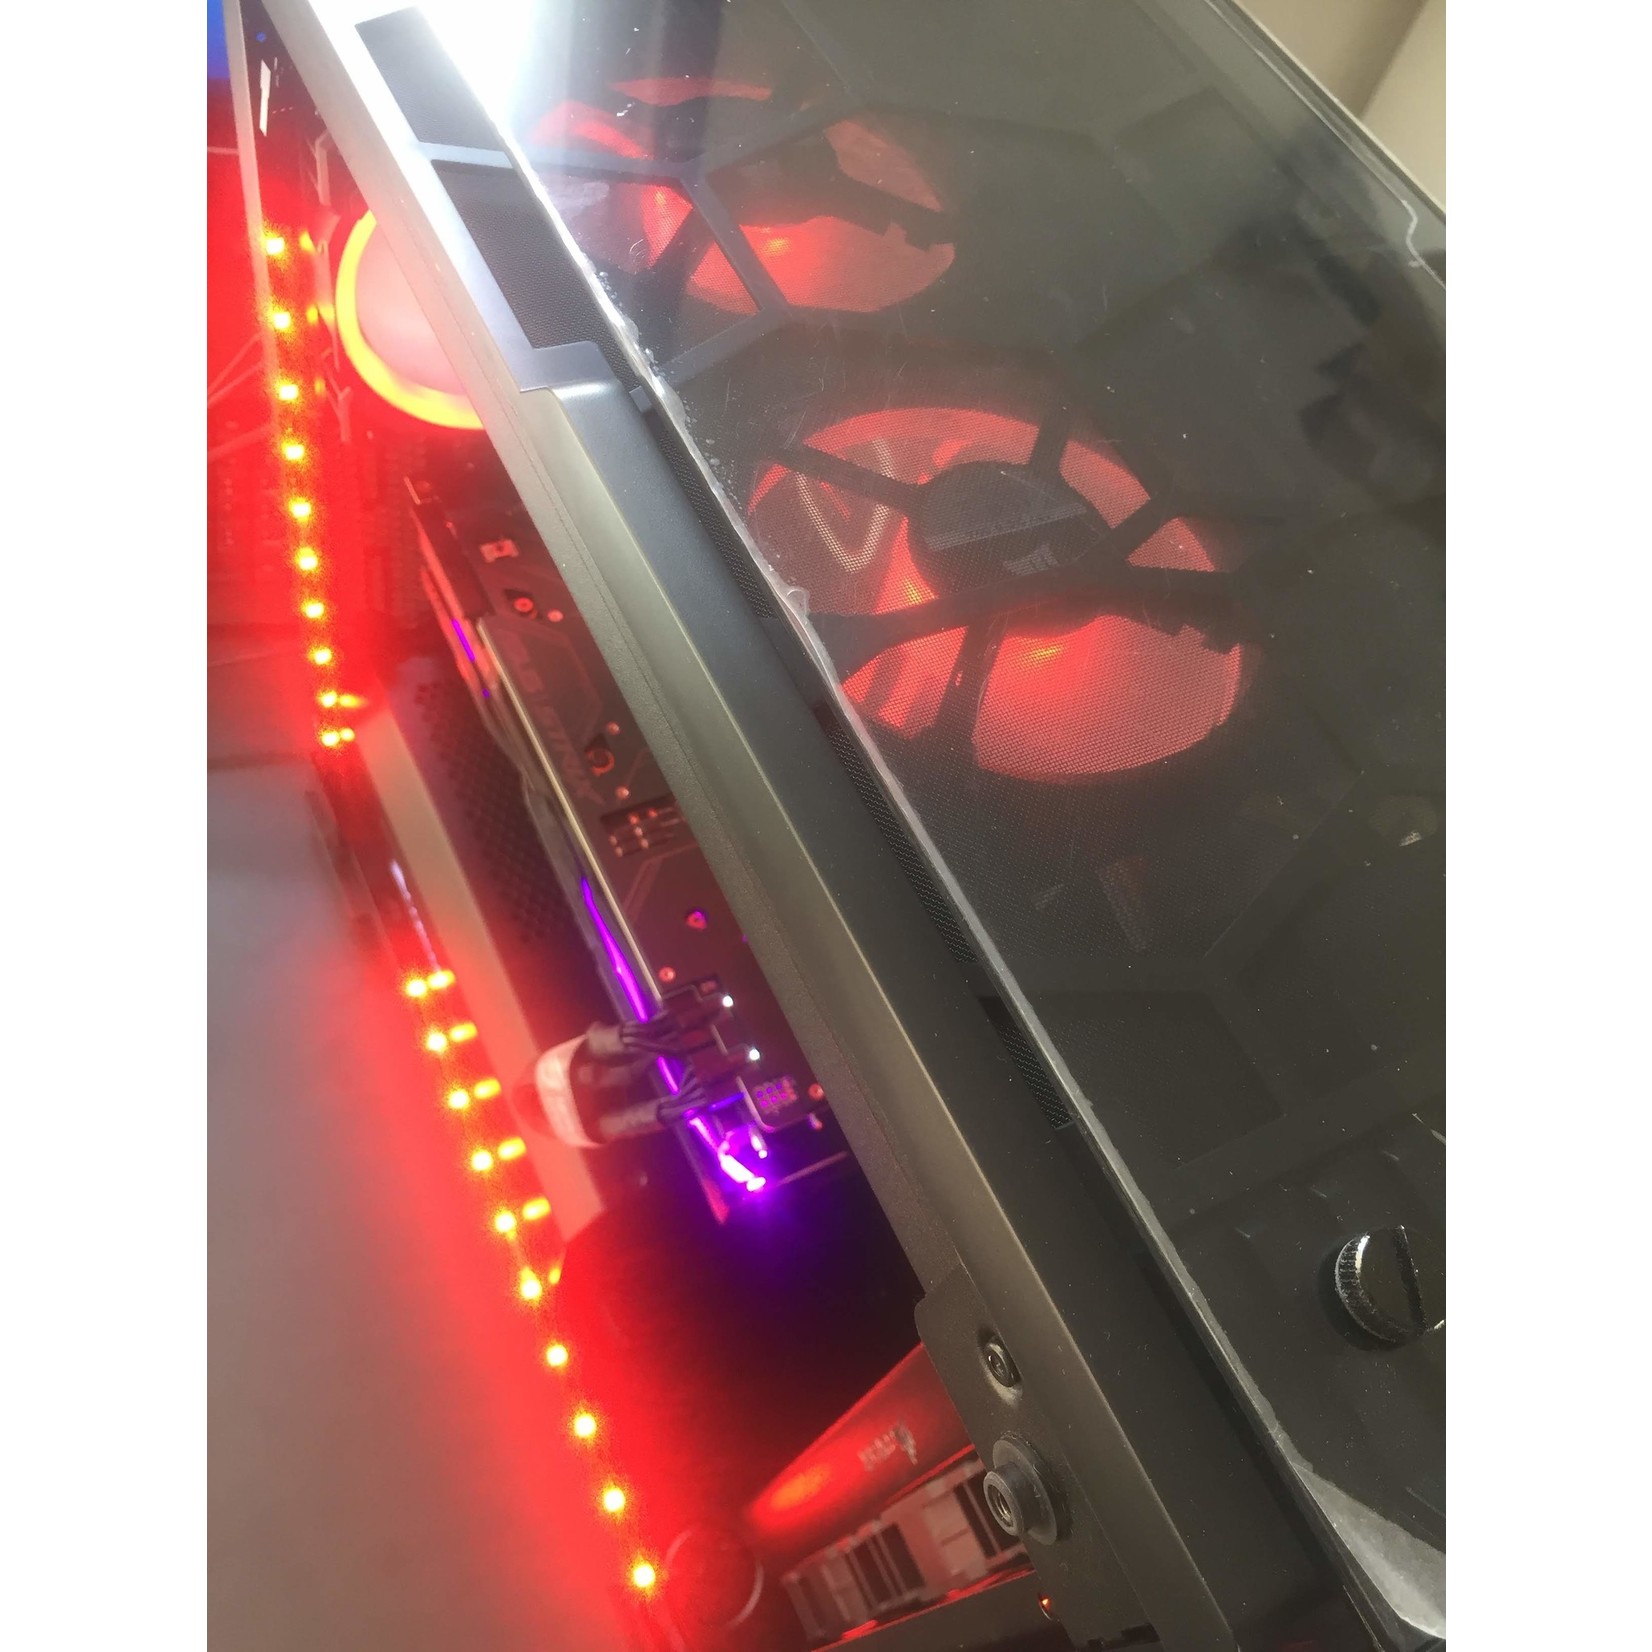 HIGH Quality PC i9-12900K mit Wasserkühlung - RTX 3080 ti - Ram 32 GB RGB - SSD.M2 1 TB - Mainboard Asus PRIME Z690-P WIFI D4  - Corsair RGB Lüfter & LED Stripes